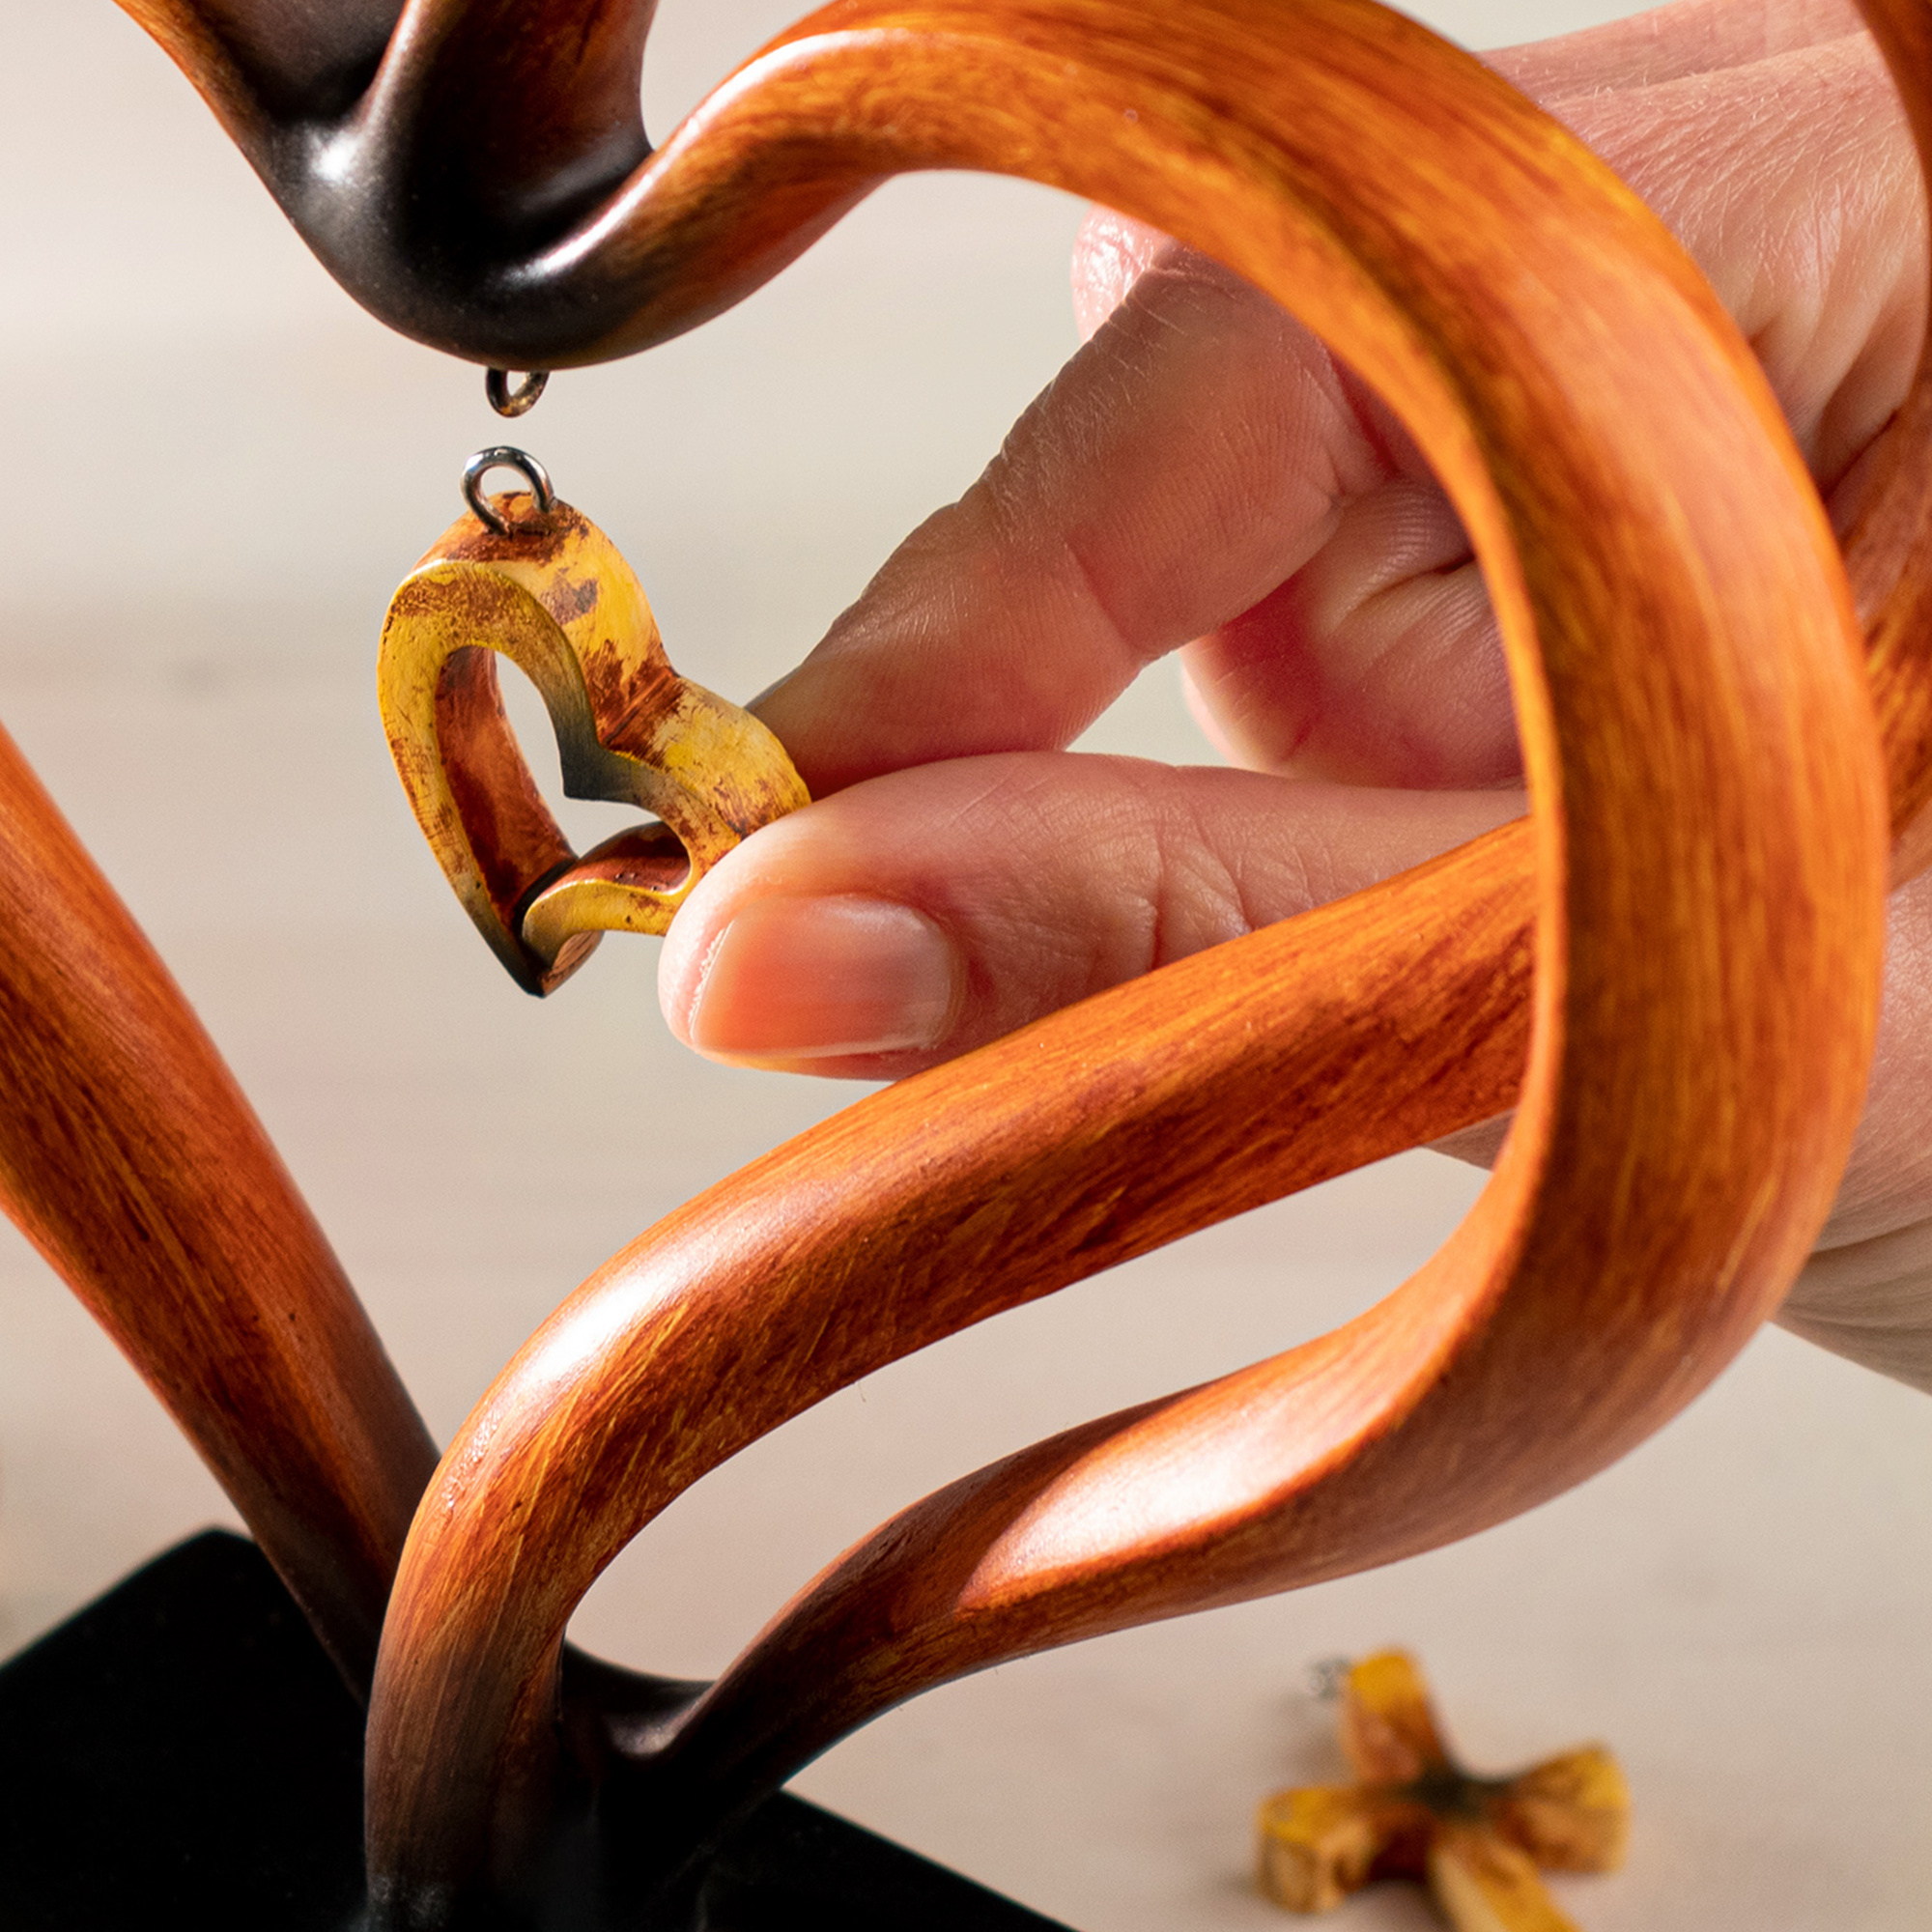 Personalisierte Holz Herz Skulptur für die Beste Mama